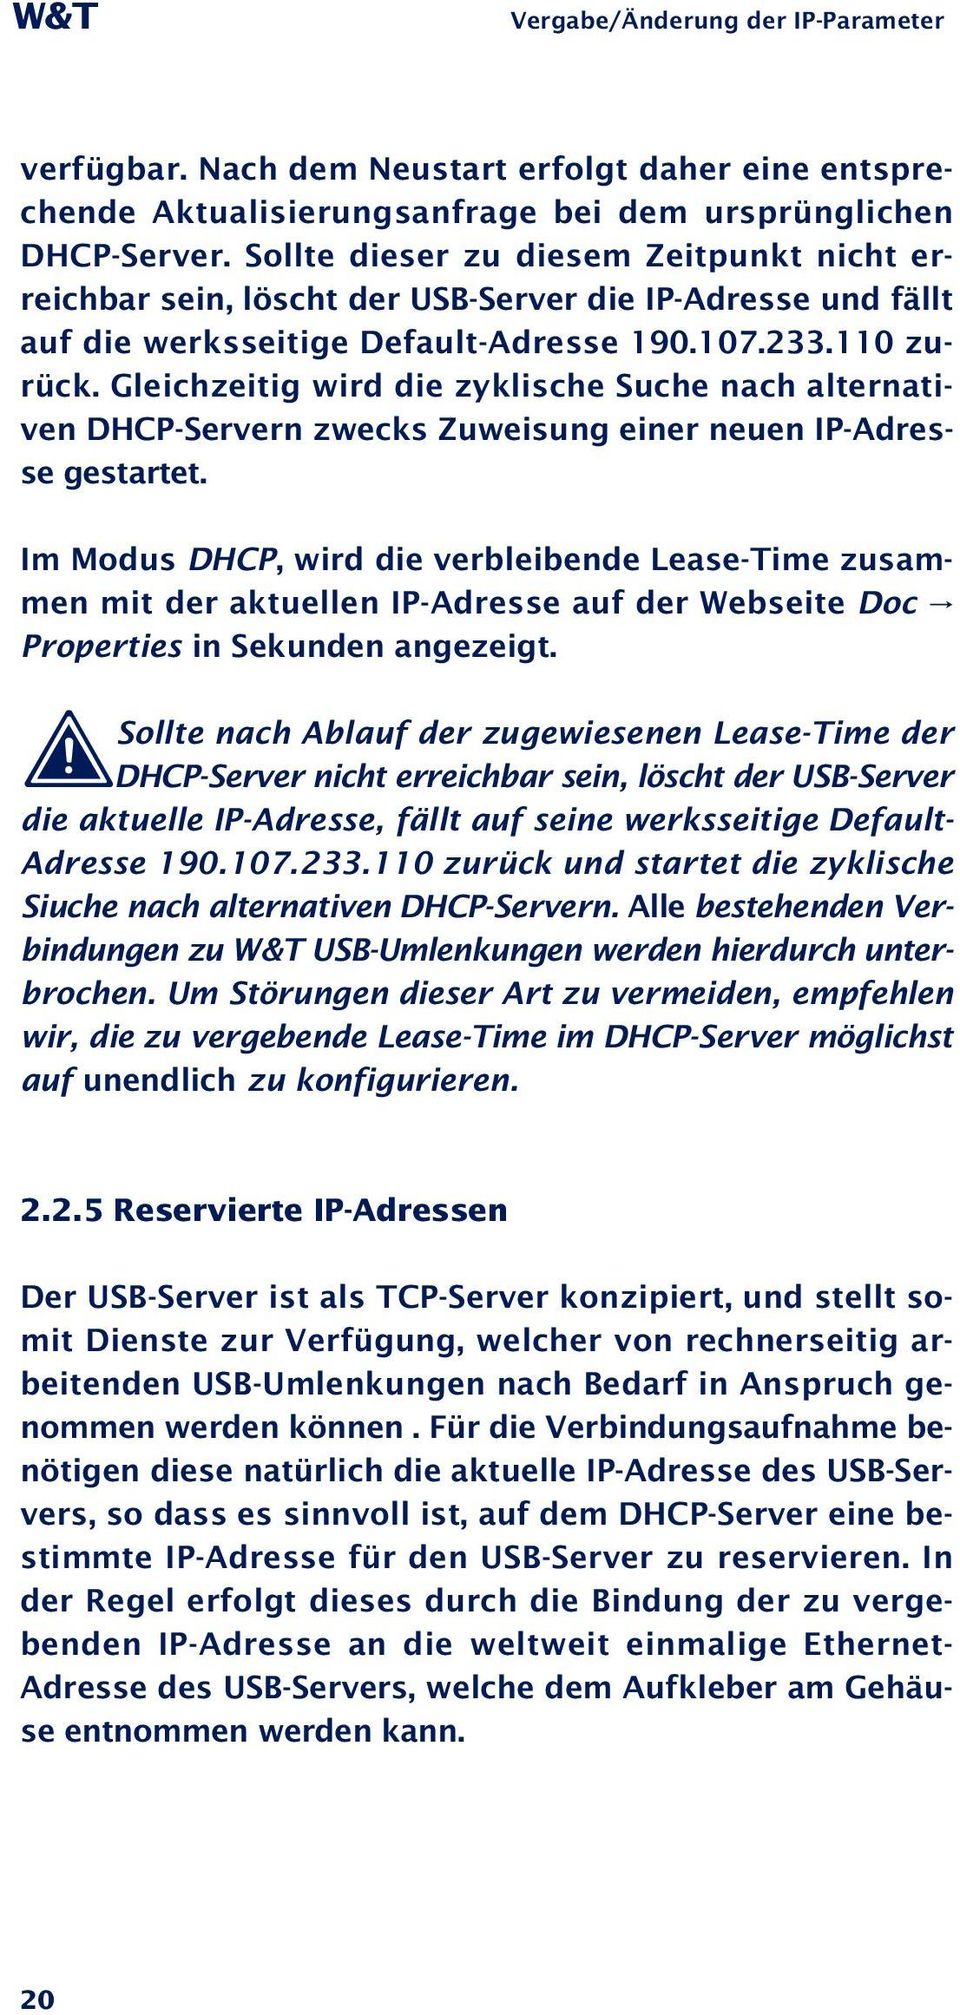 Gleichzeitig wird die zyklische Suche nach alternativen DHCP-Servern zwecks Zuweisung einer neuen IP-Adresse gestartet.